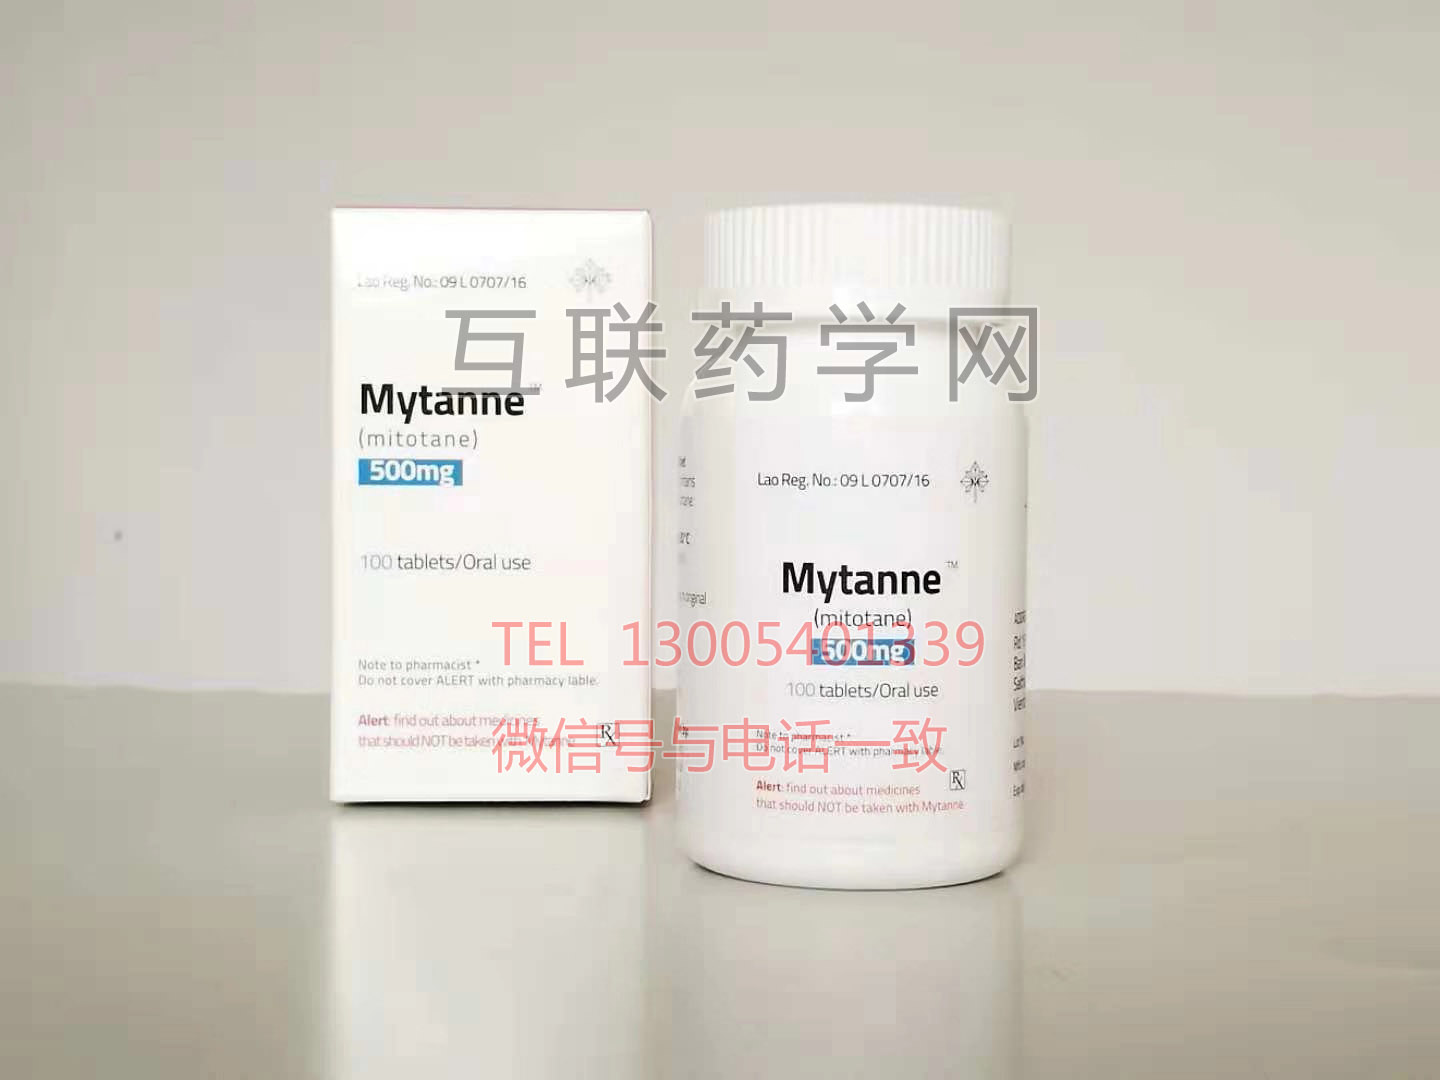 Mytanne(mitotane)